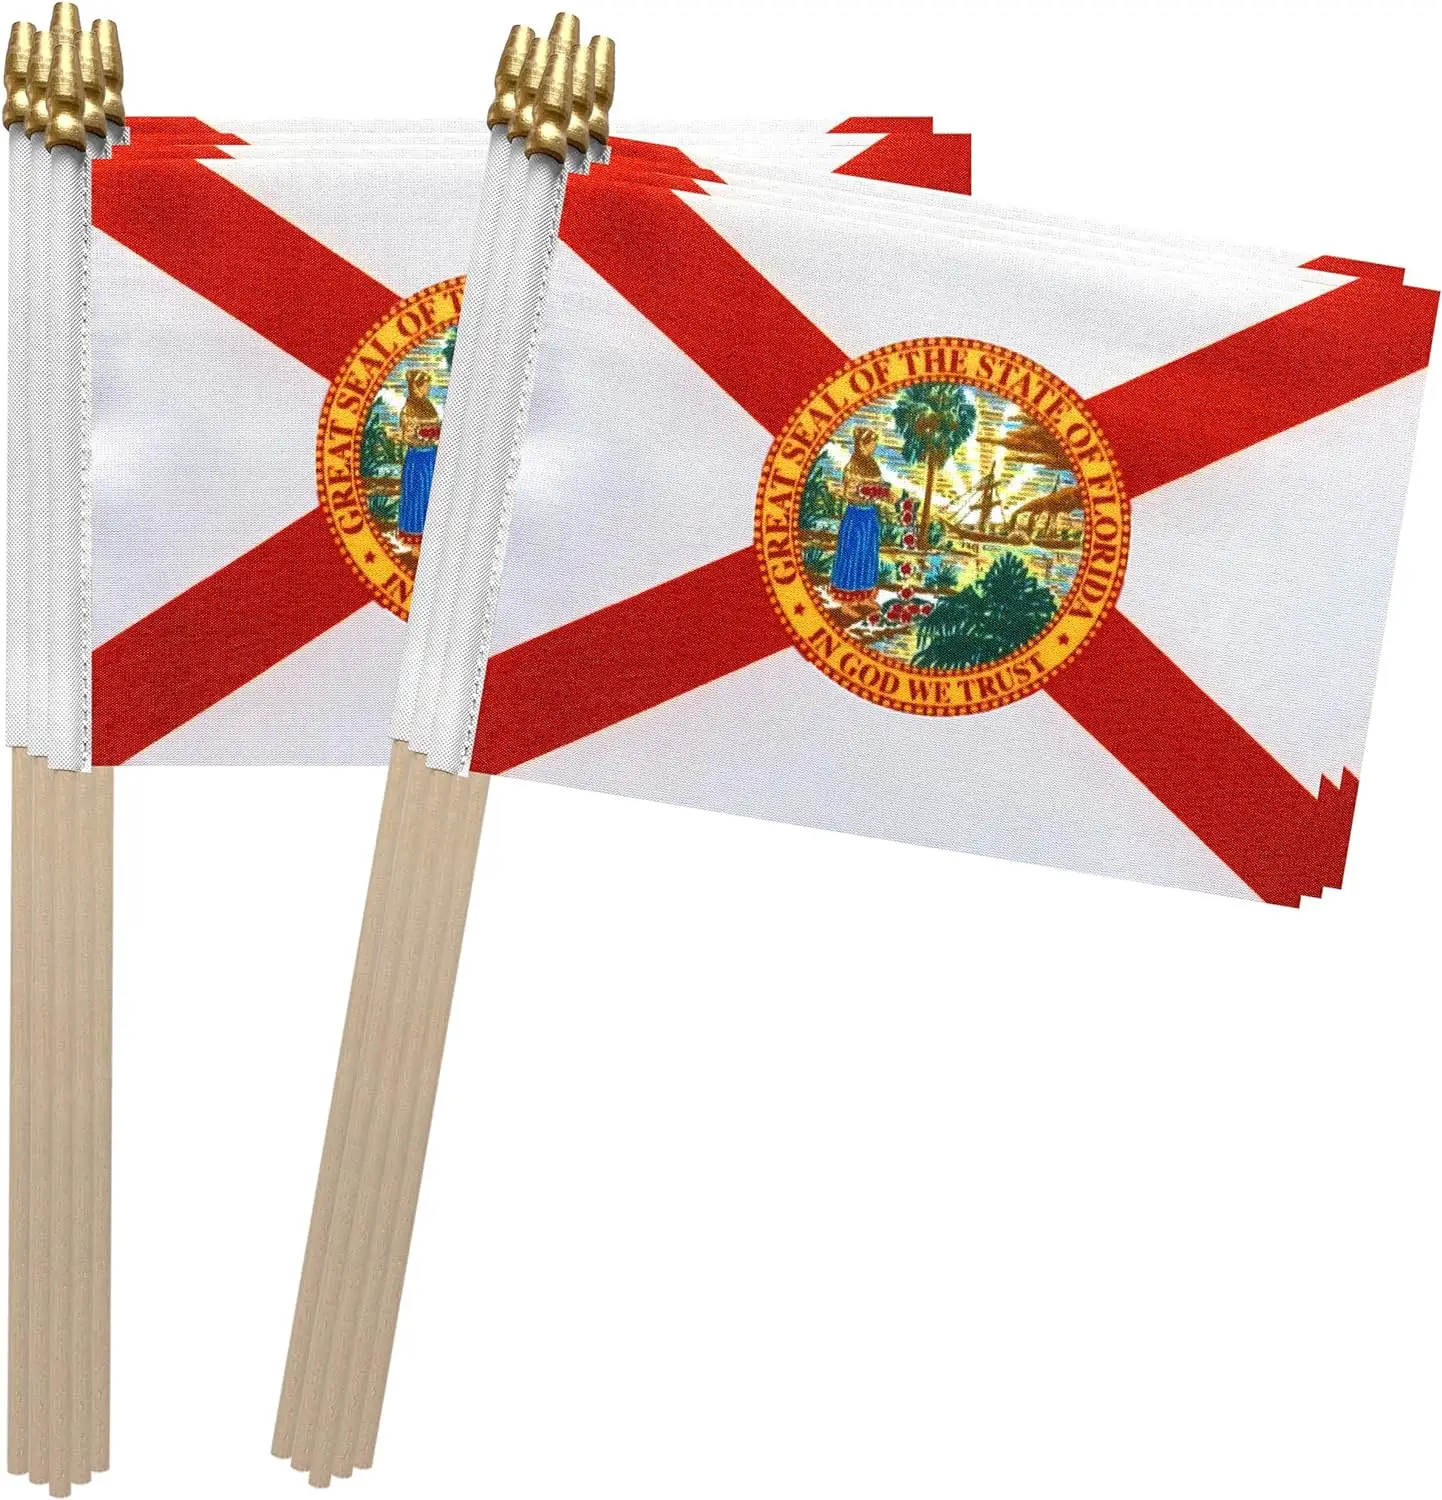 Drapeau américain de la Floride FL sur bâton en bois Petits mini drapeaux à main 4x6 pouces